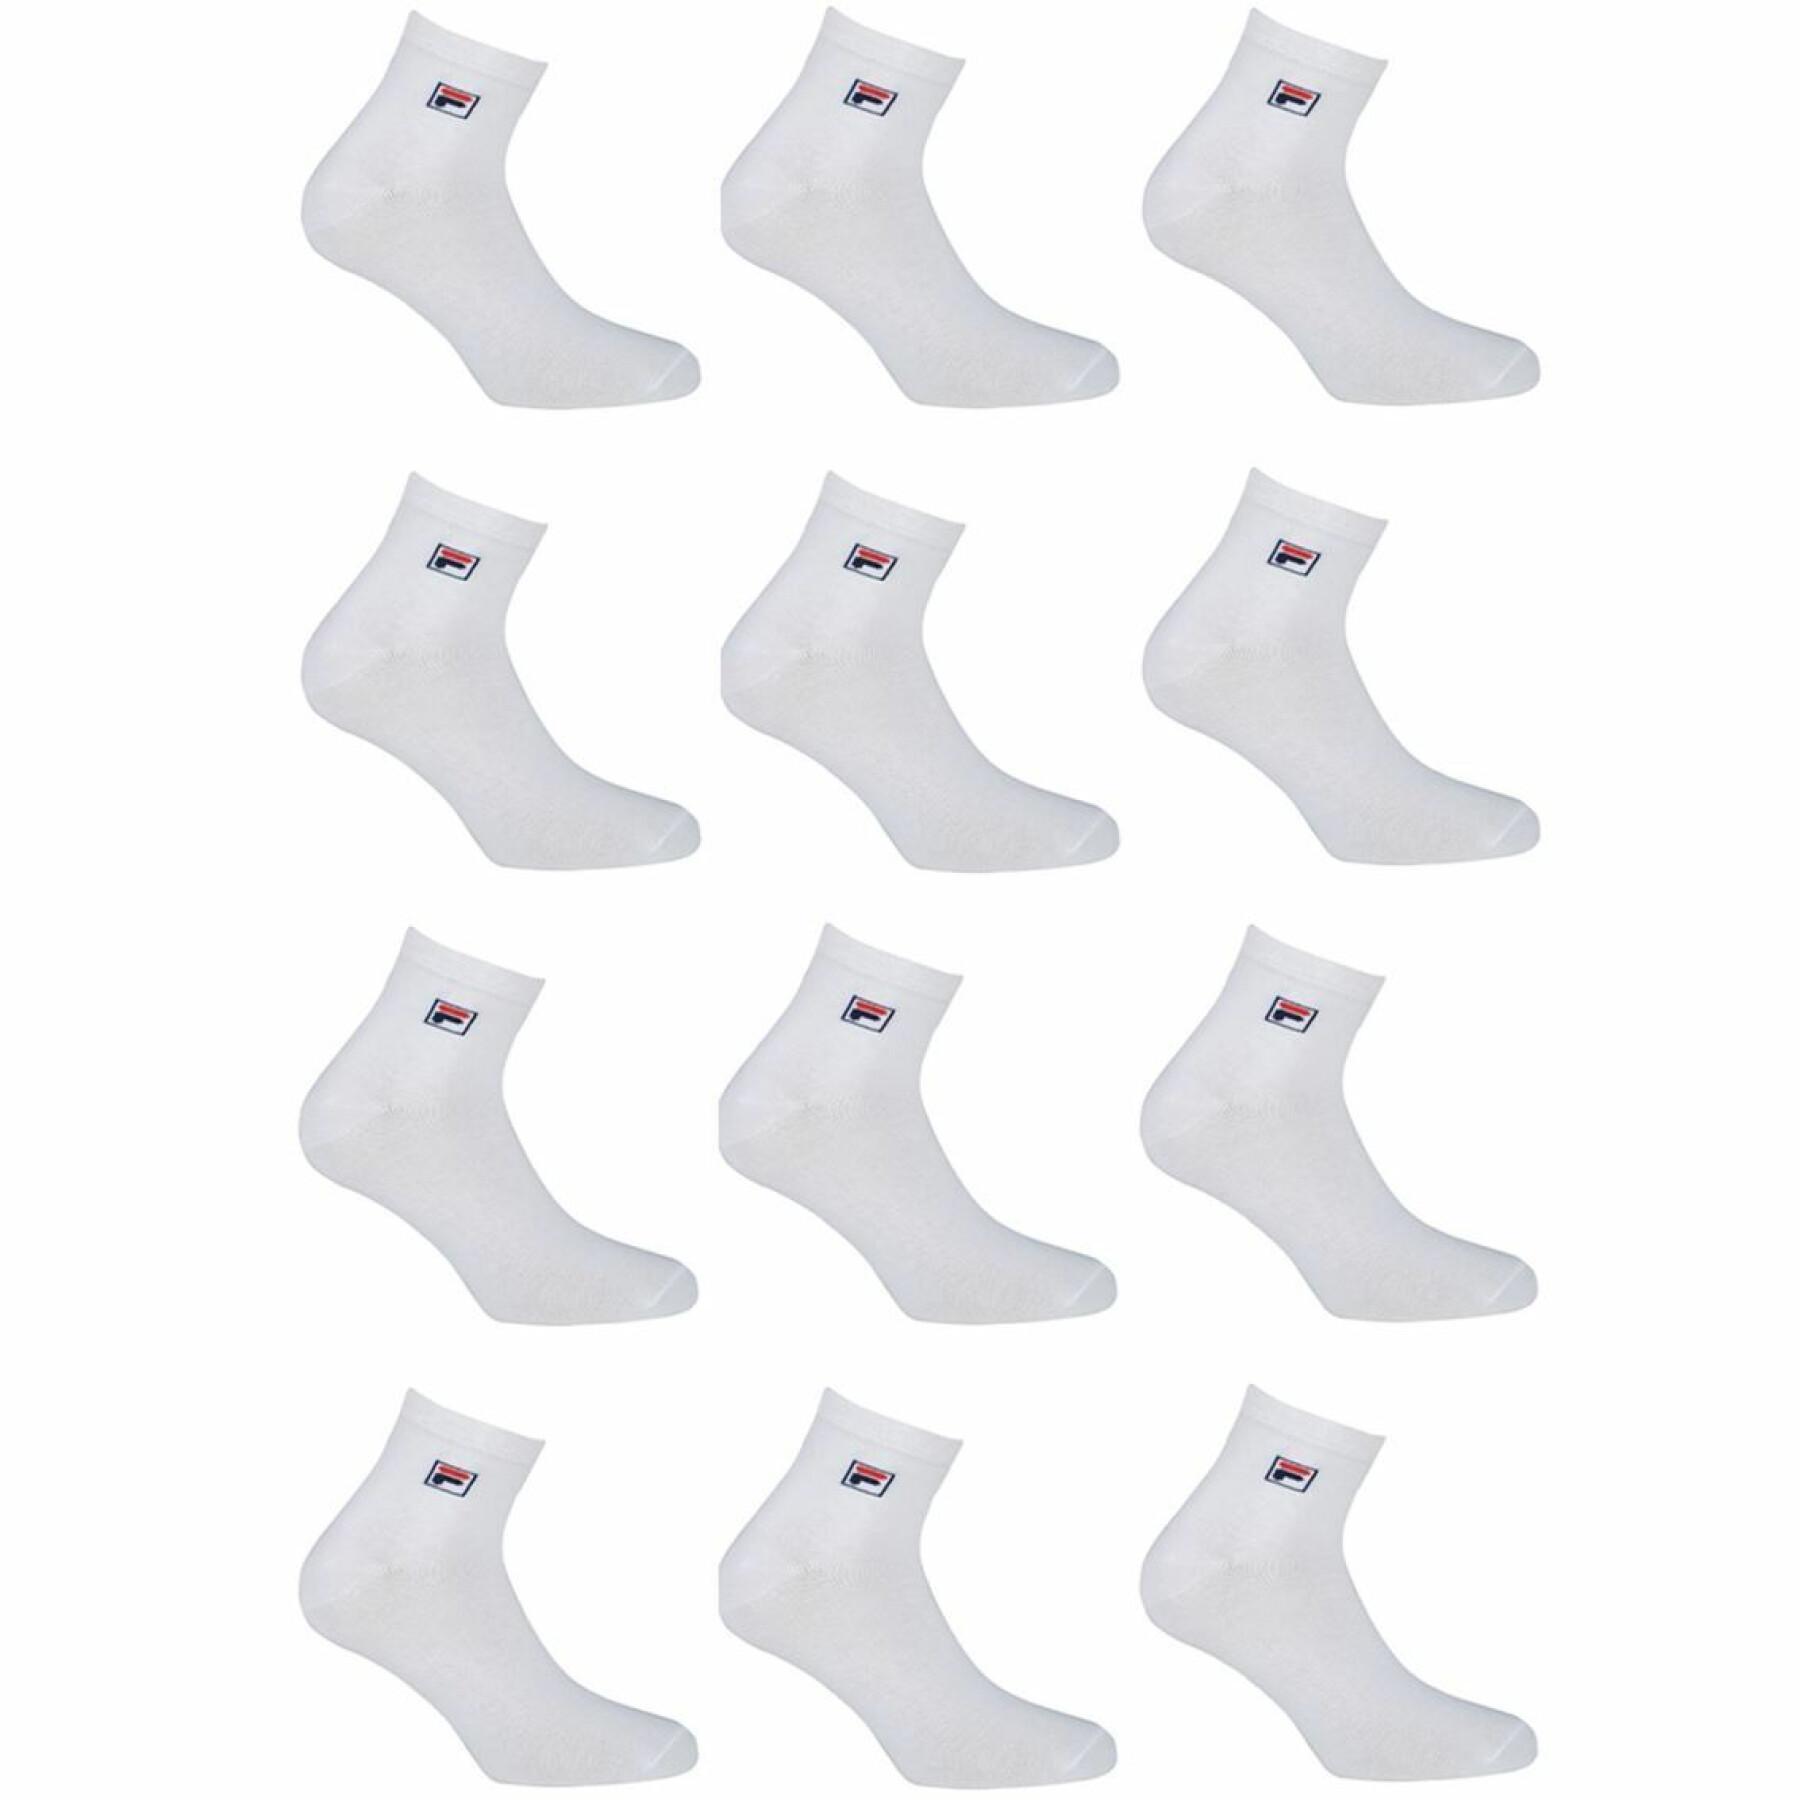 Pacote de 12 pares de meias Fila Lowcuts